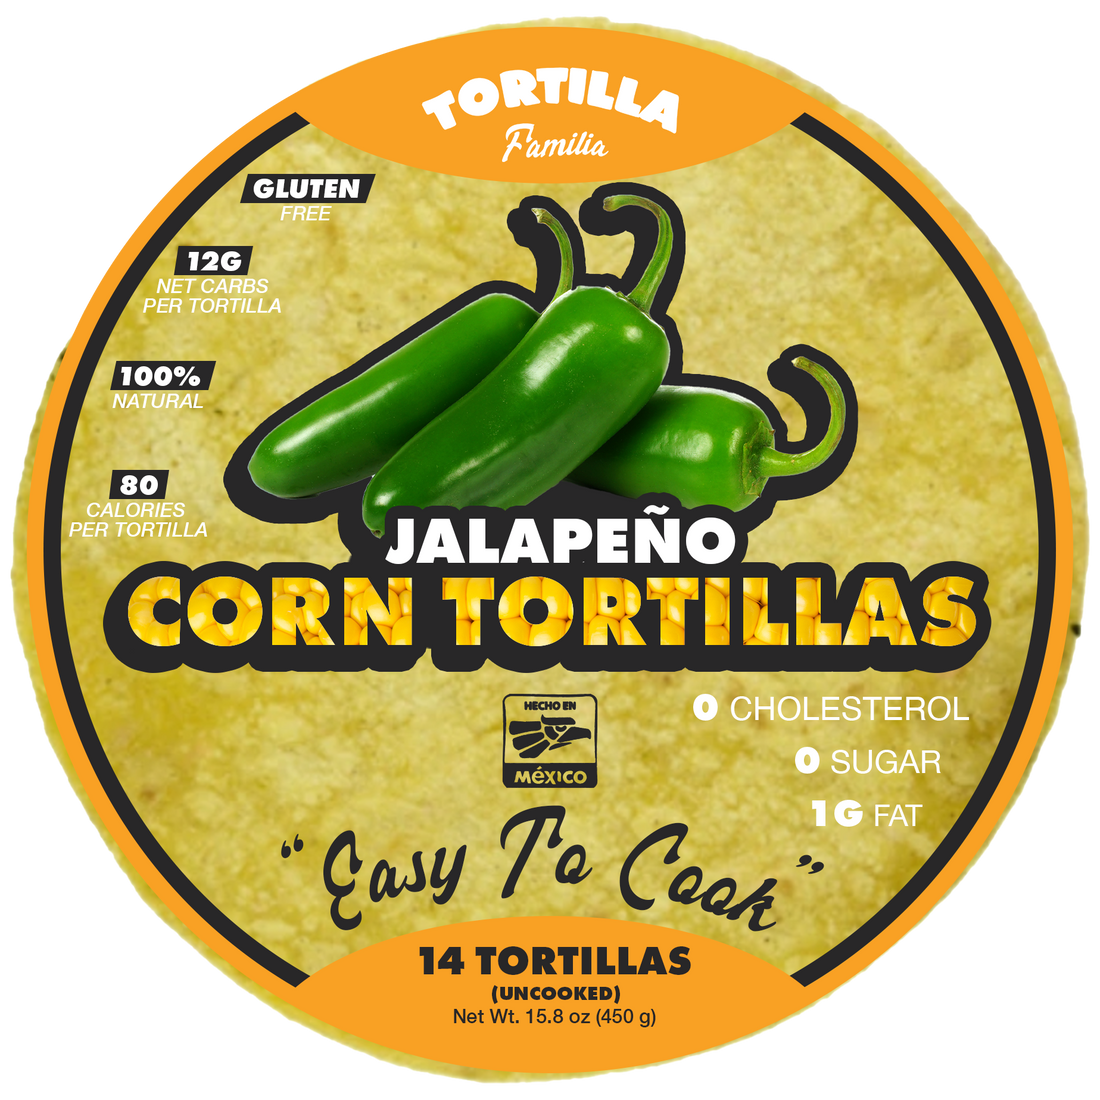 Jalapeño Corn Tortillas